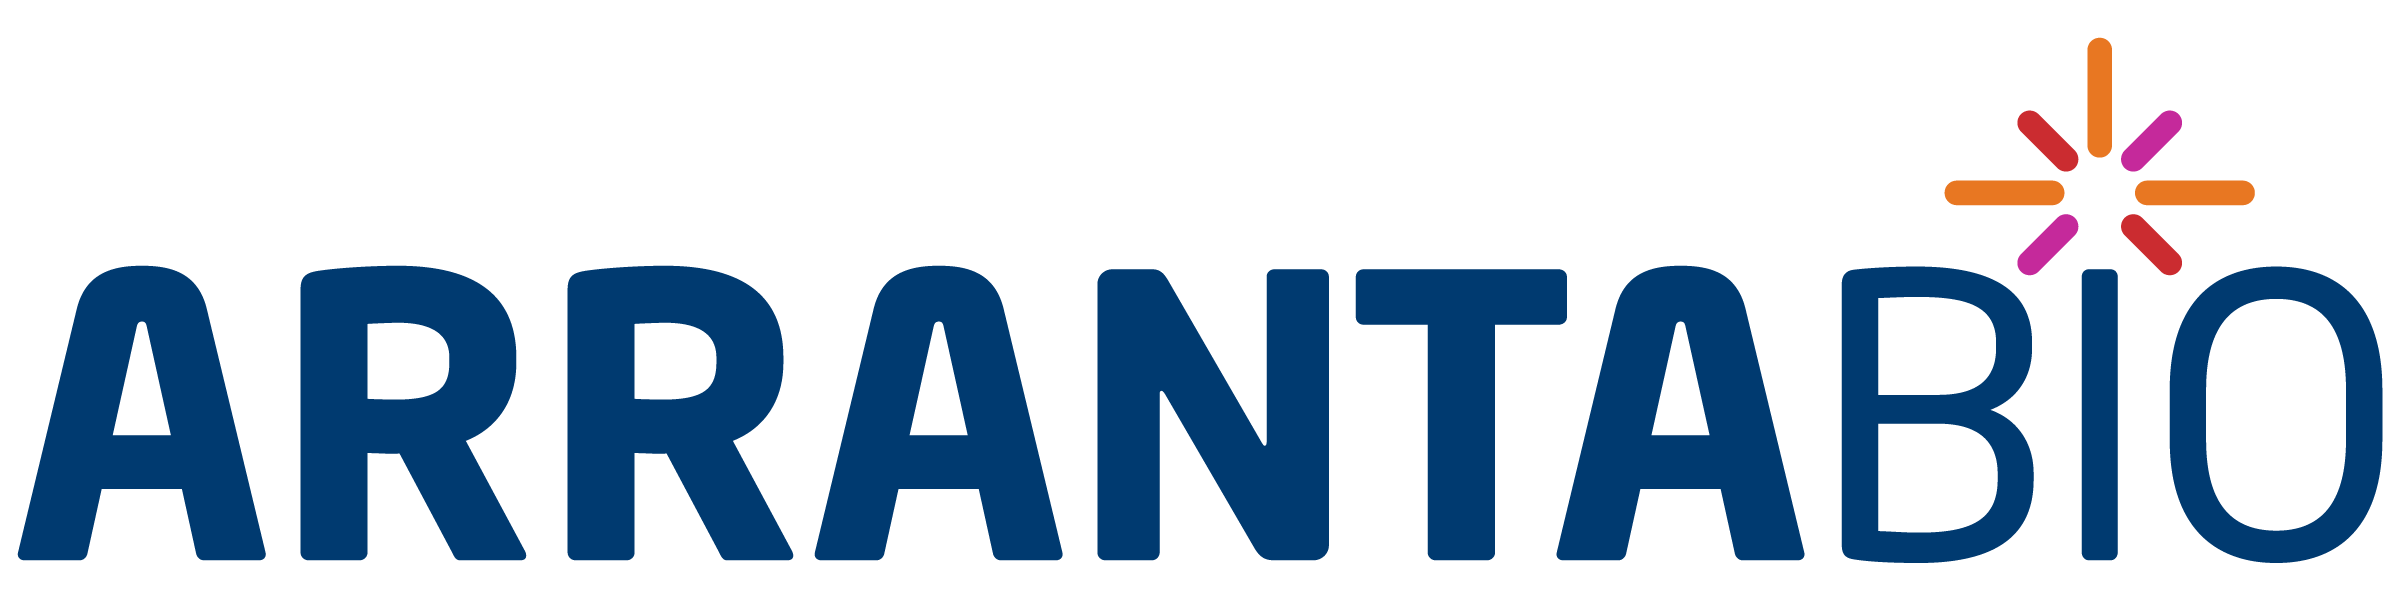 ArrantaBio Innovation Partner